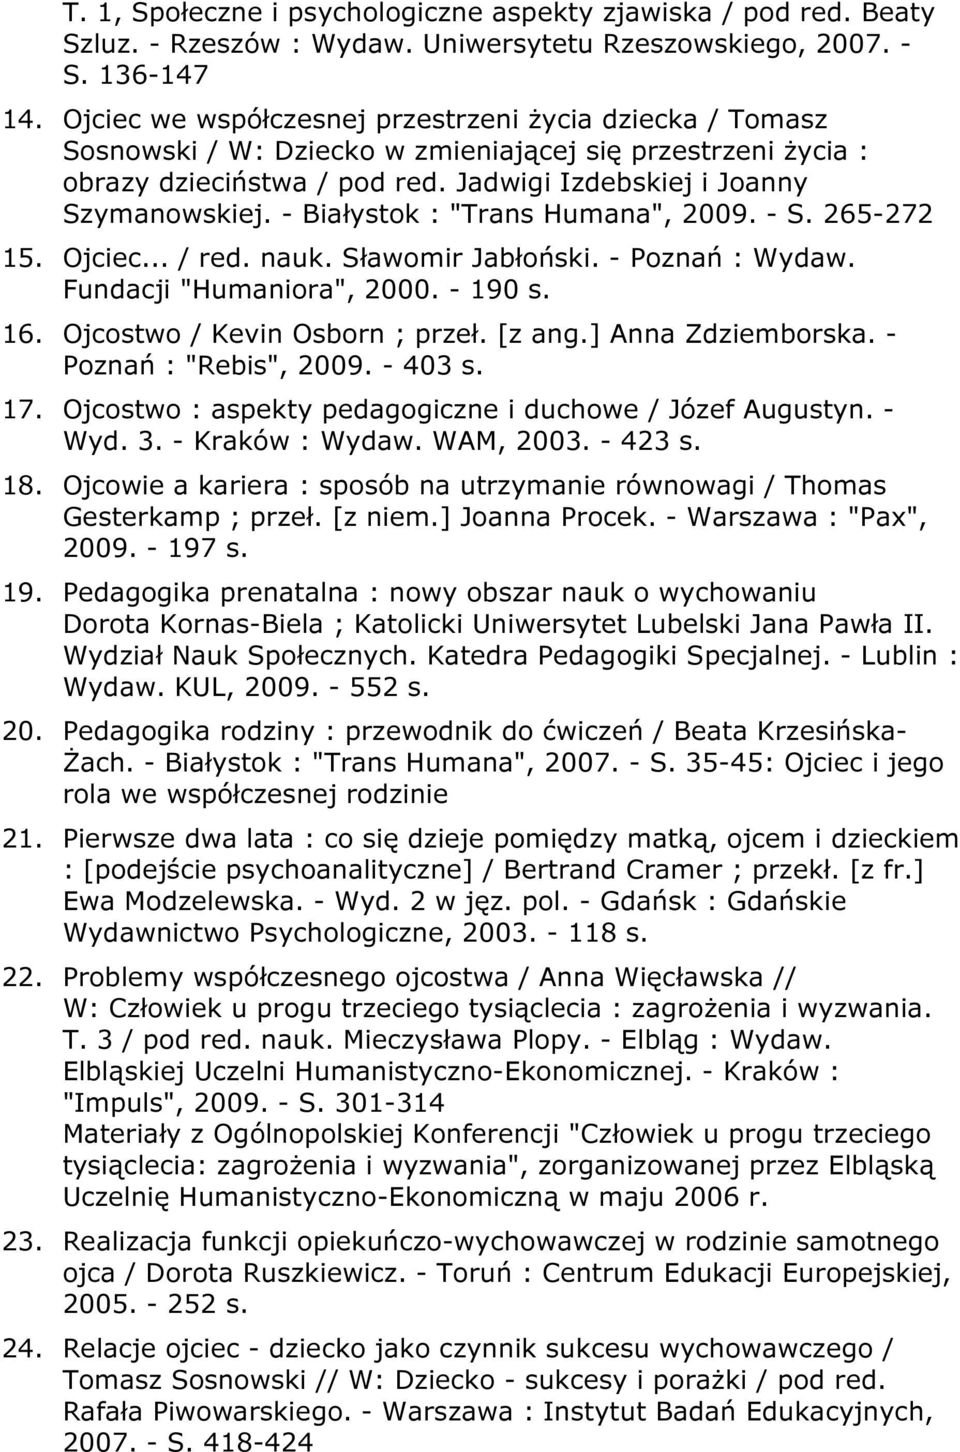 - Białystok : "Trans Humana", 2009. - S. 265-272 15. Ojciec... / red. nauk. Sławomir Jabłoński. - Poznań : Wydaw. Fundacji "Humaniora", 2000. - 190 s. 16. Ojcostwo / Kevin Osborn ; przeł. [z ang.